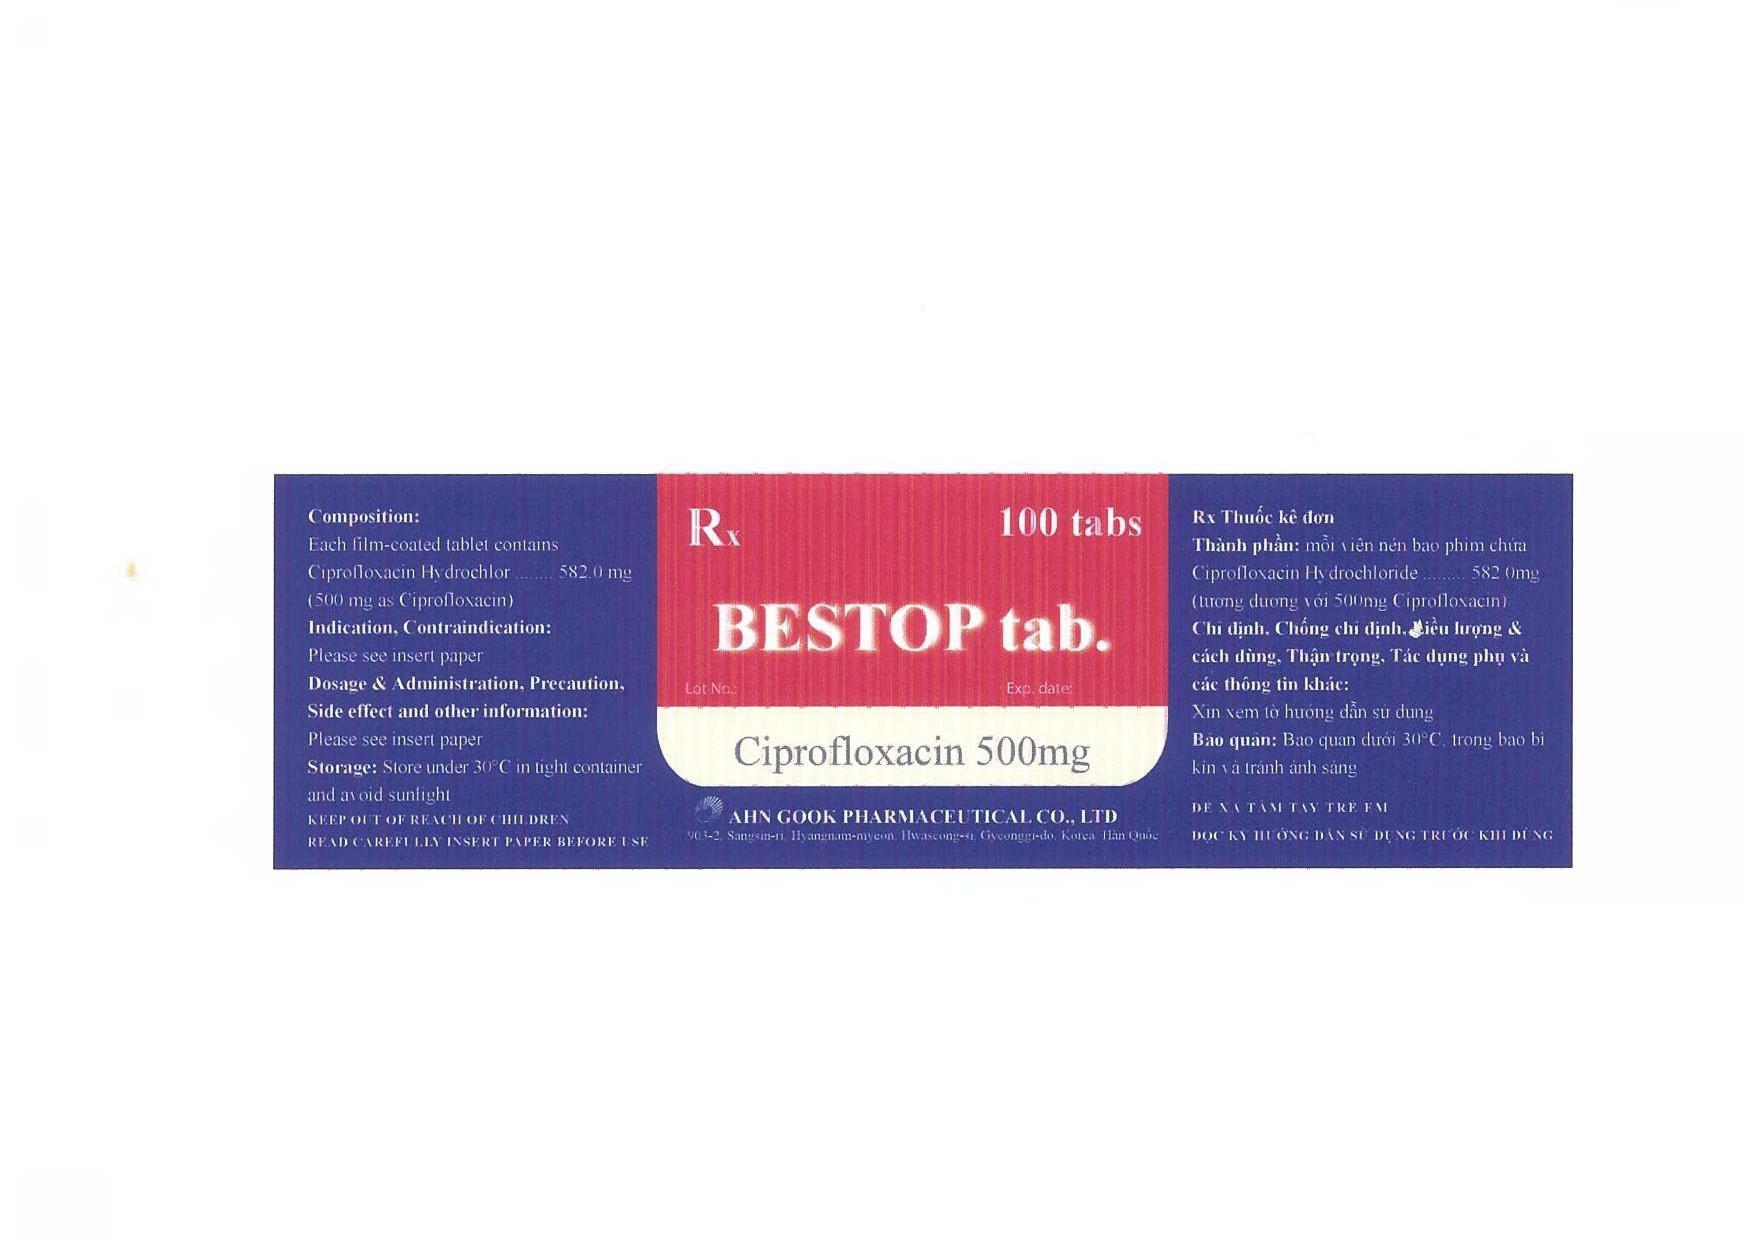 Bestop (Ciprofloxacin) 500mg AHN Gook (H/100v)